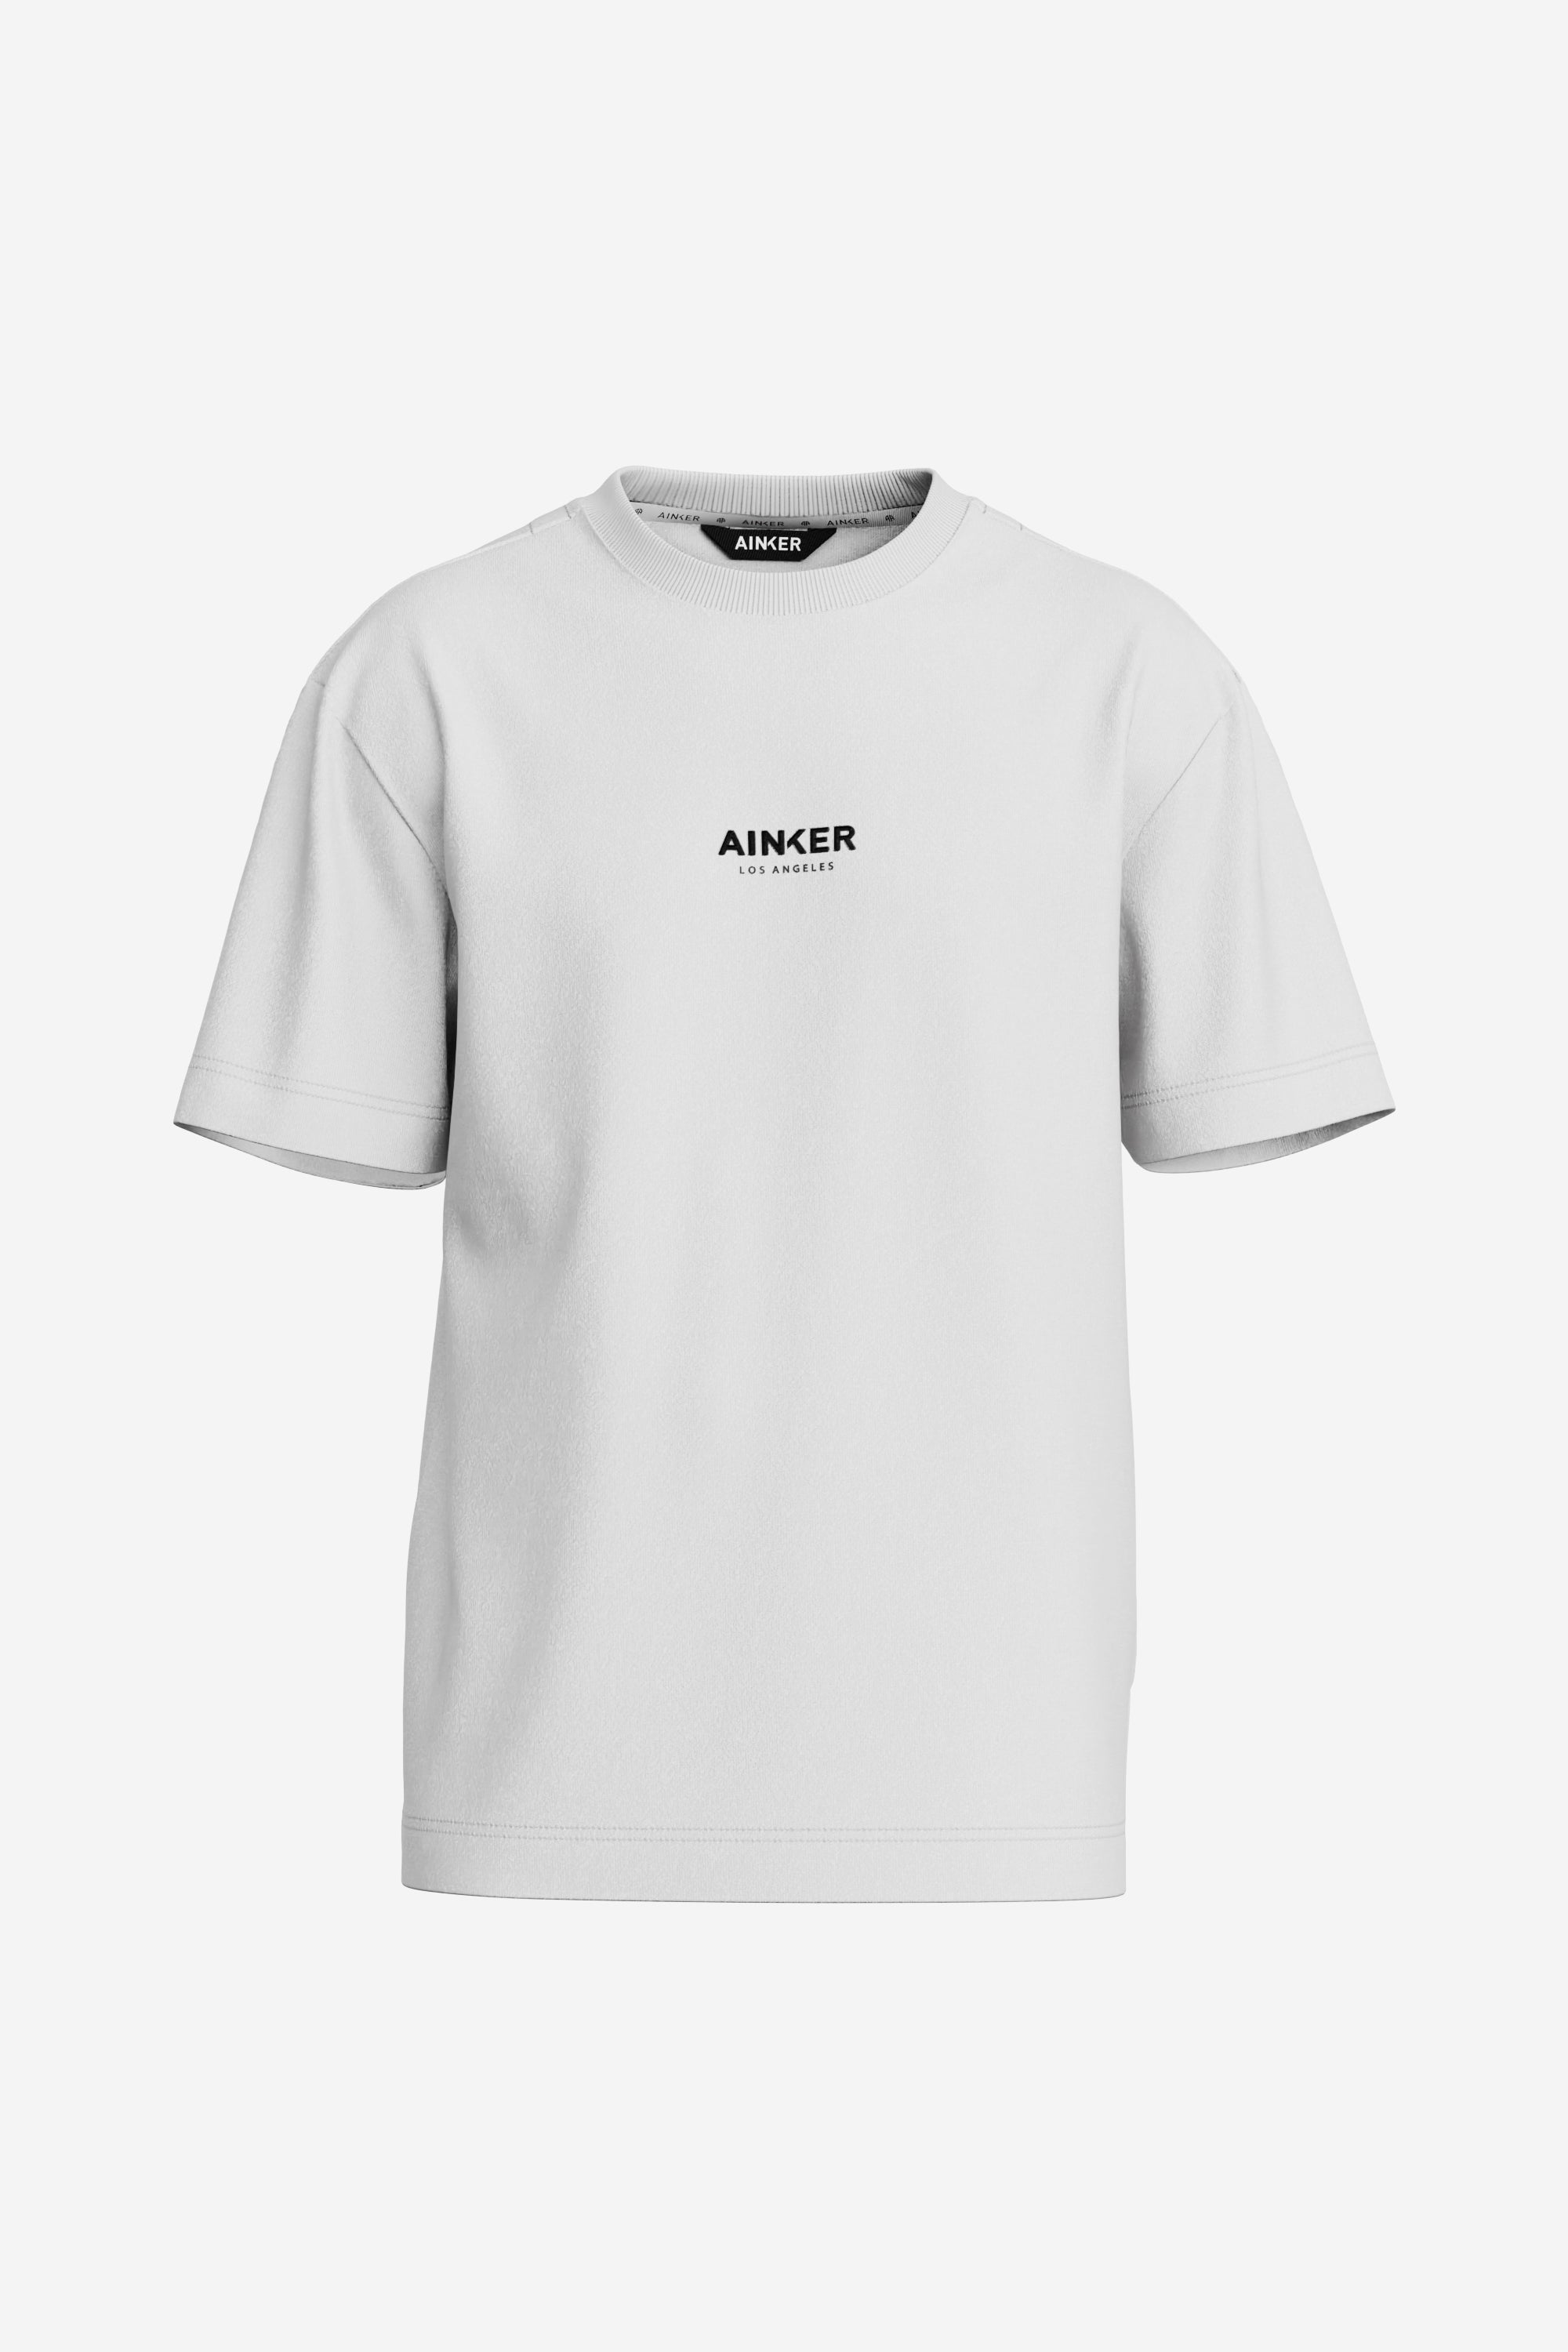 Ainker White Mercerize T-Shirt